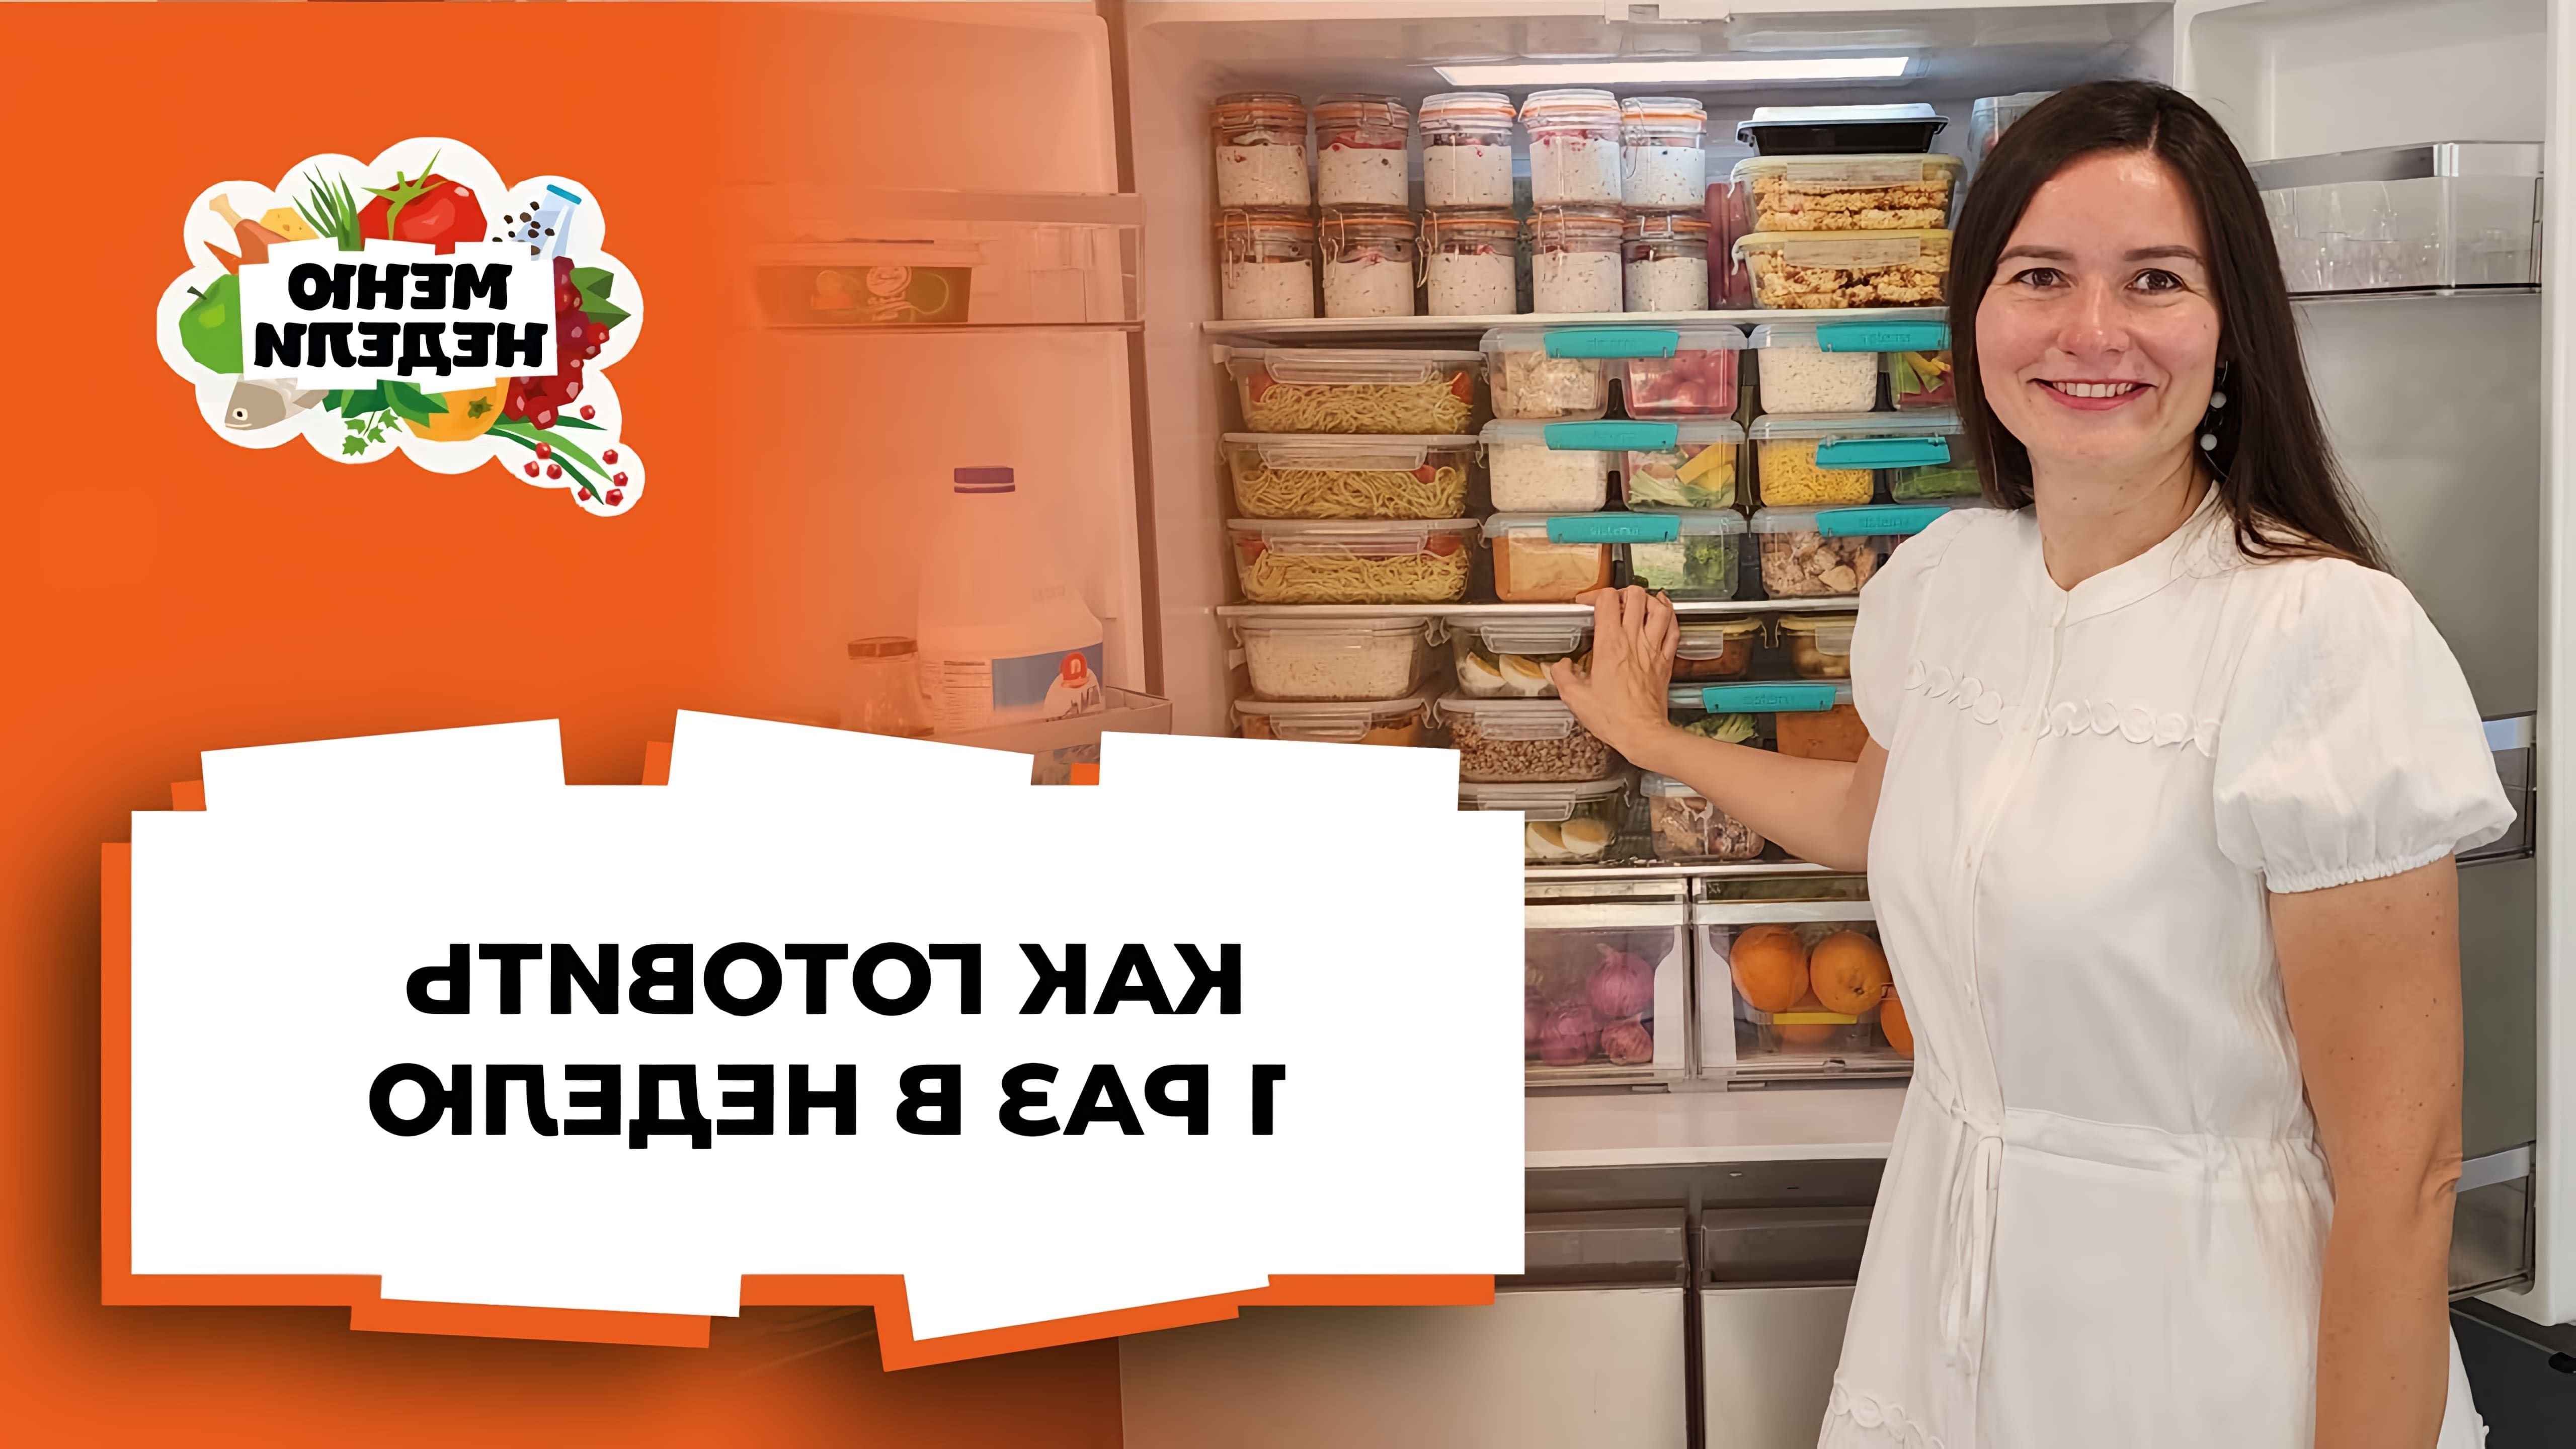 В этом видео демонстрируется процесс приготовления и заморозки готовой еды на всю семью на целую неделю